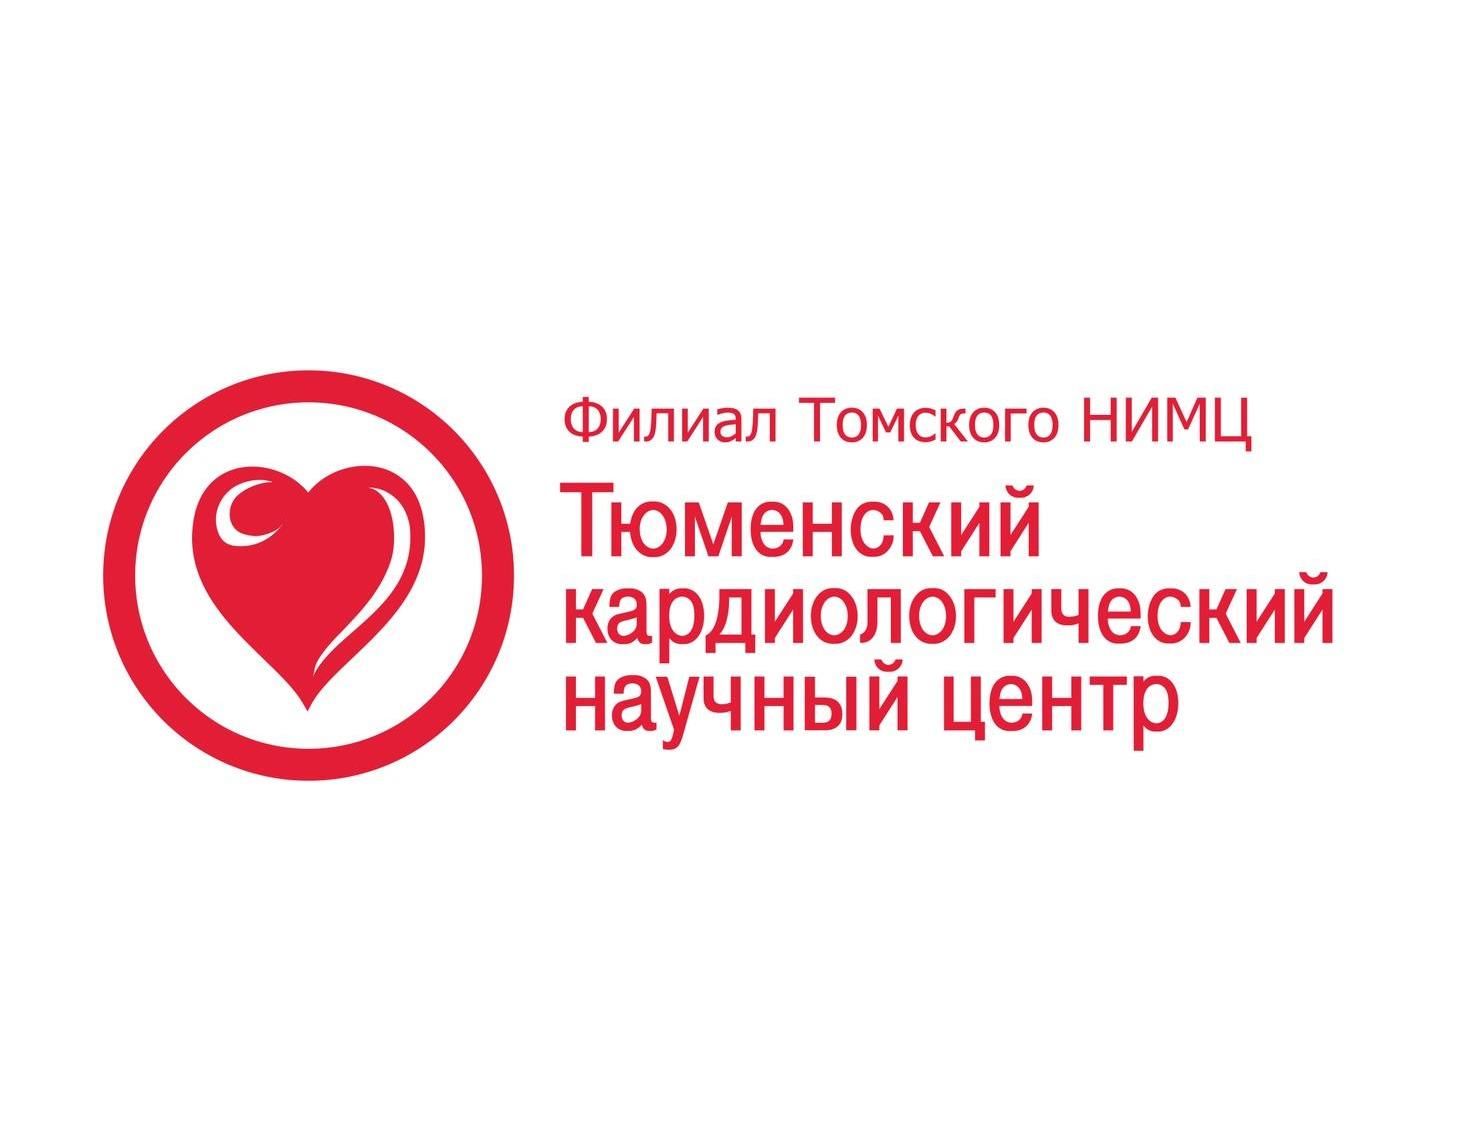 Международная конференция «Лечение артериальной гипертонии у больных высокого риска в практике врача-терапевта»